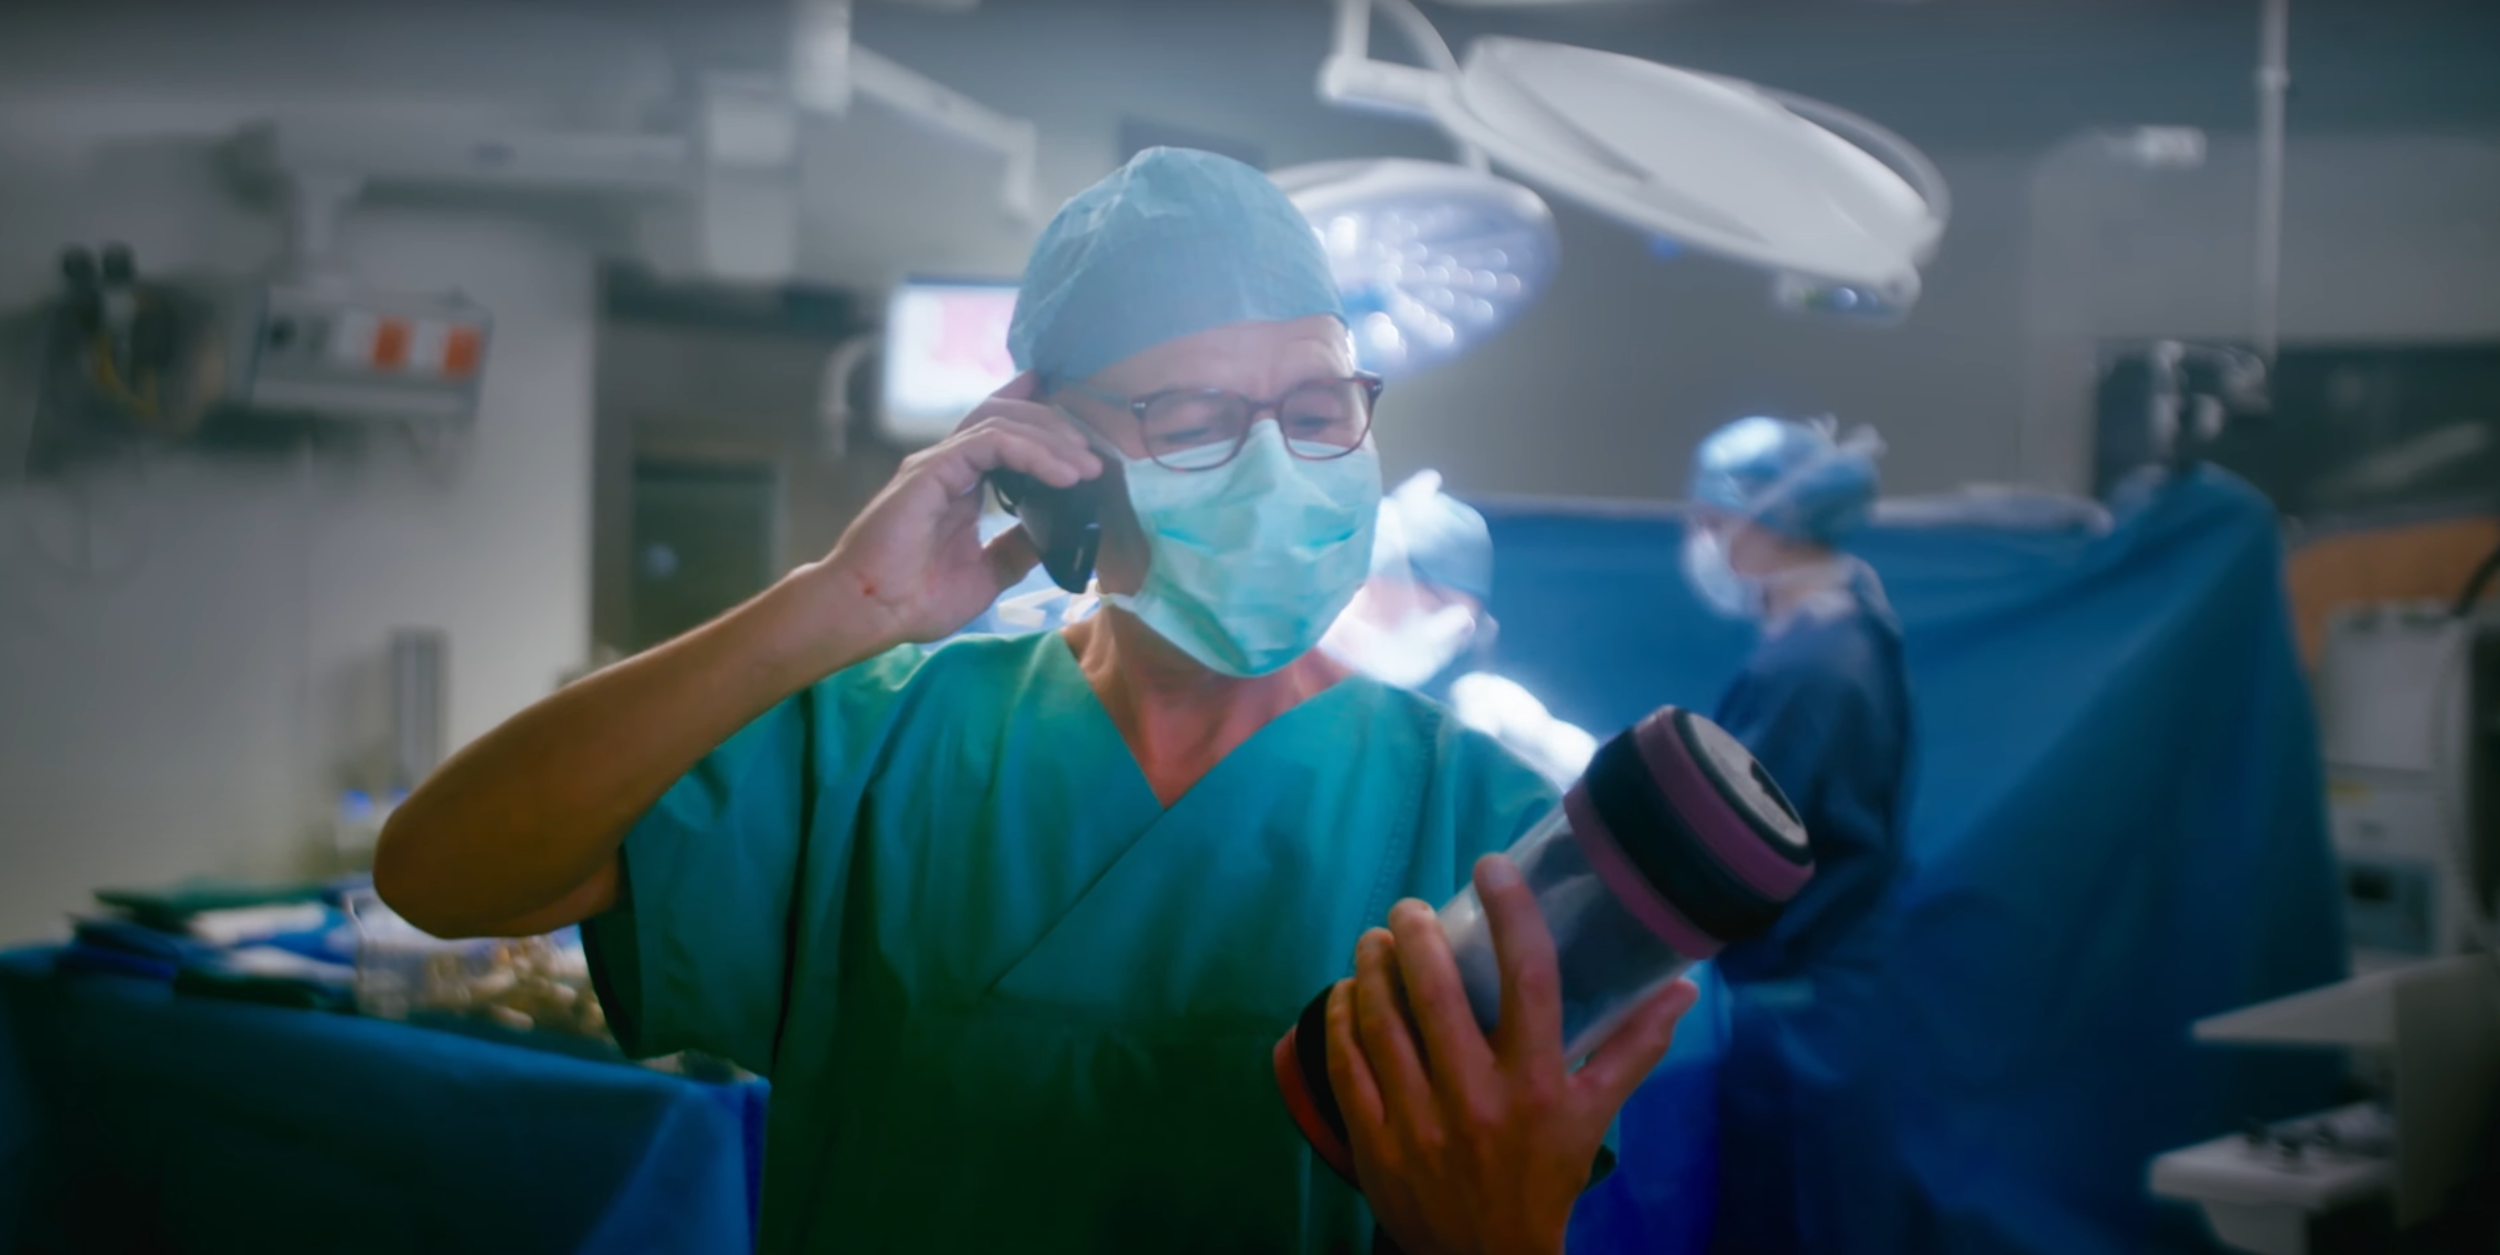 Vue de face d'une personne en salle d'opération qui tient un tube téléphonique dans la main et qui parle au téléphone.